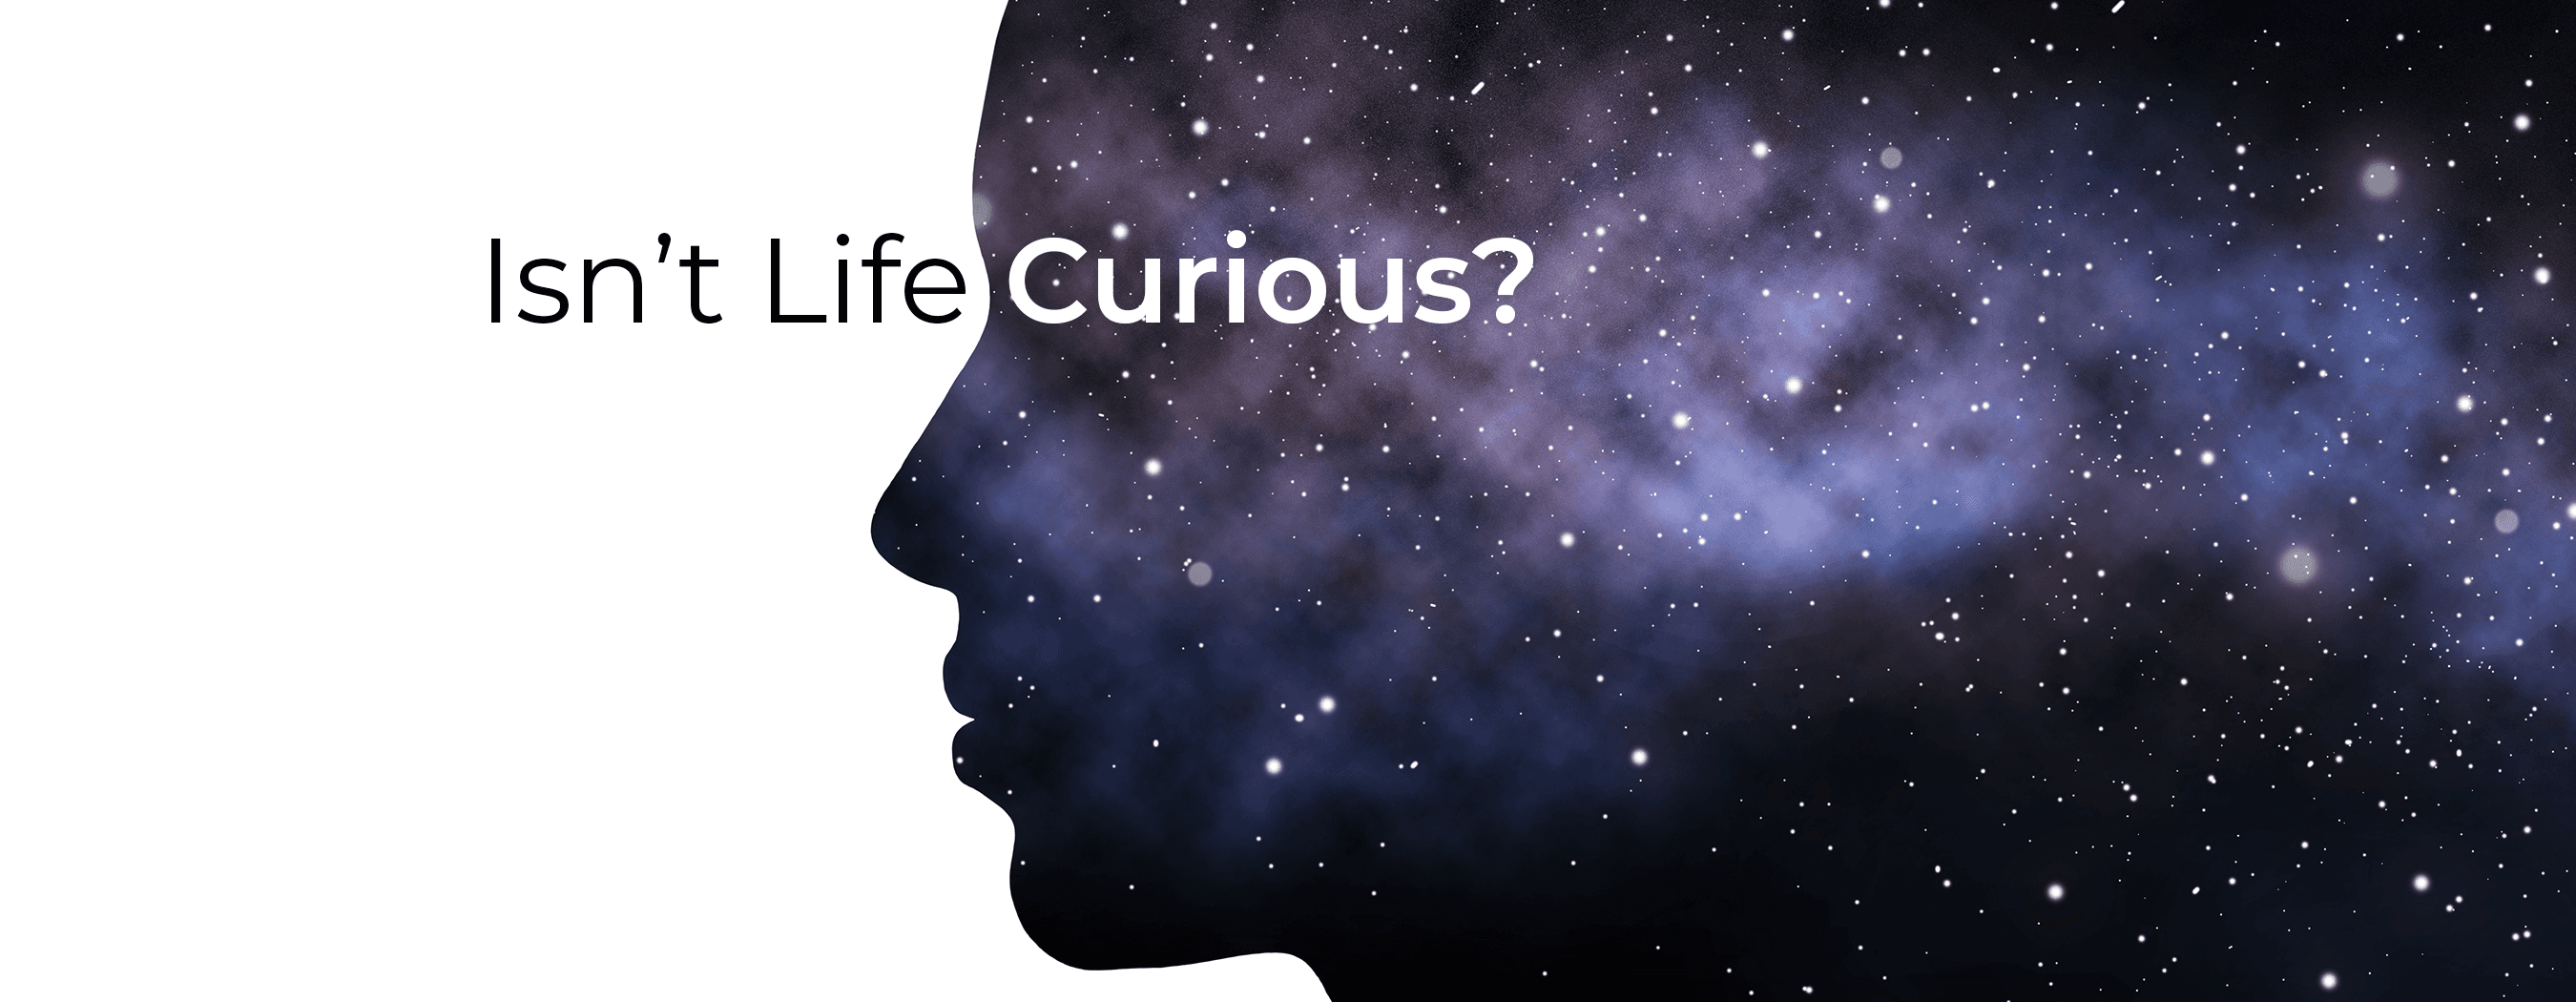 Isn't Life Curious?